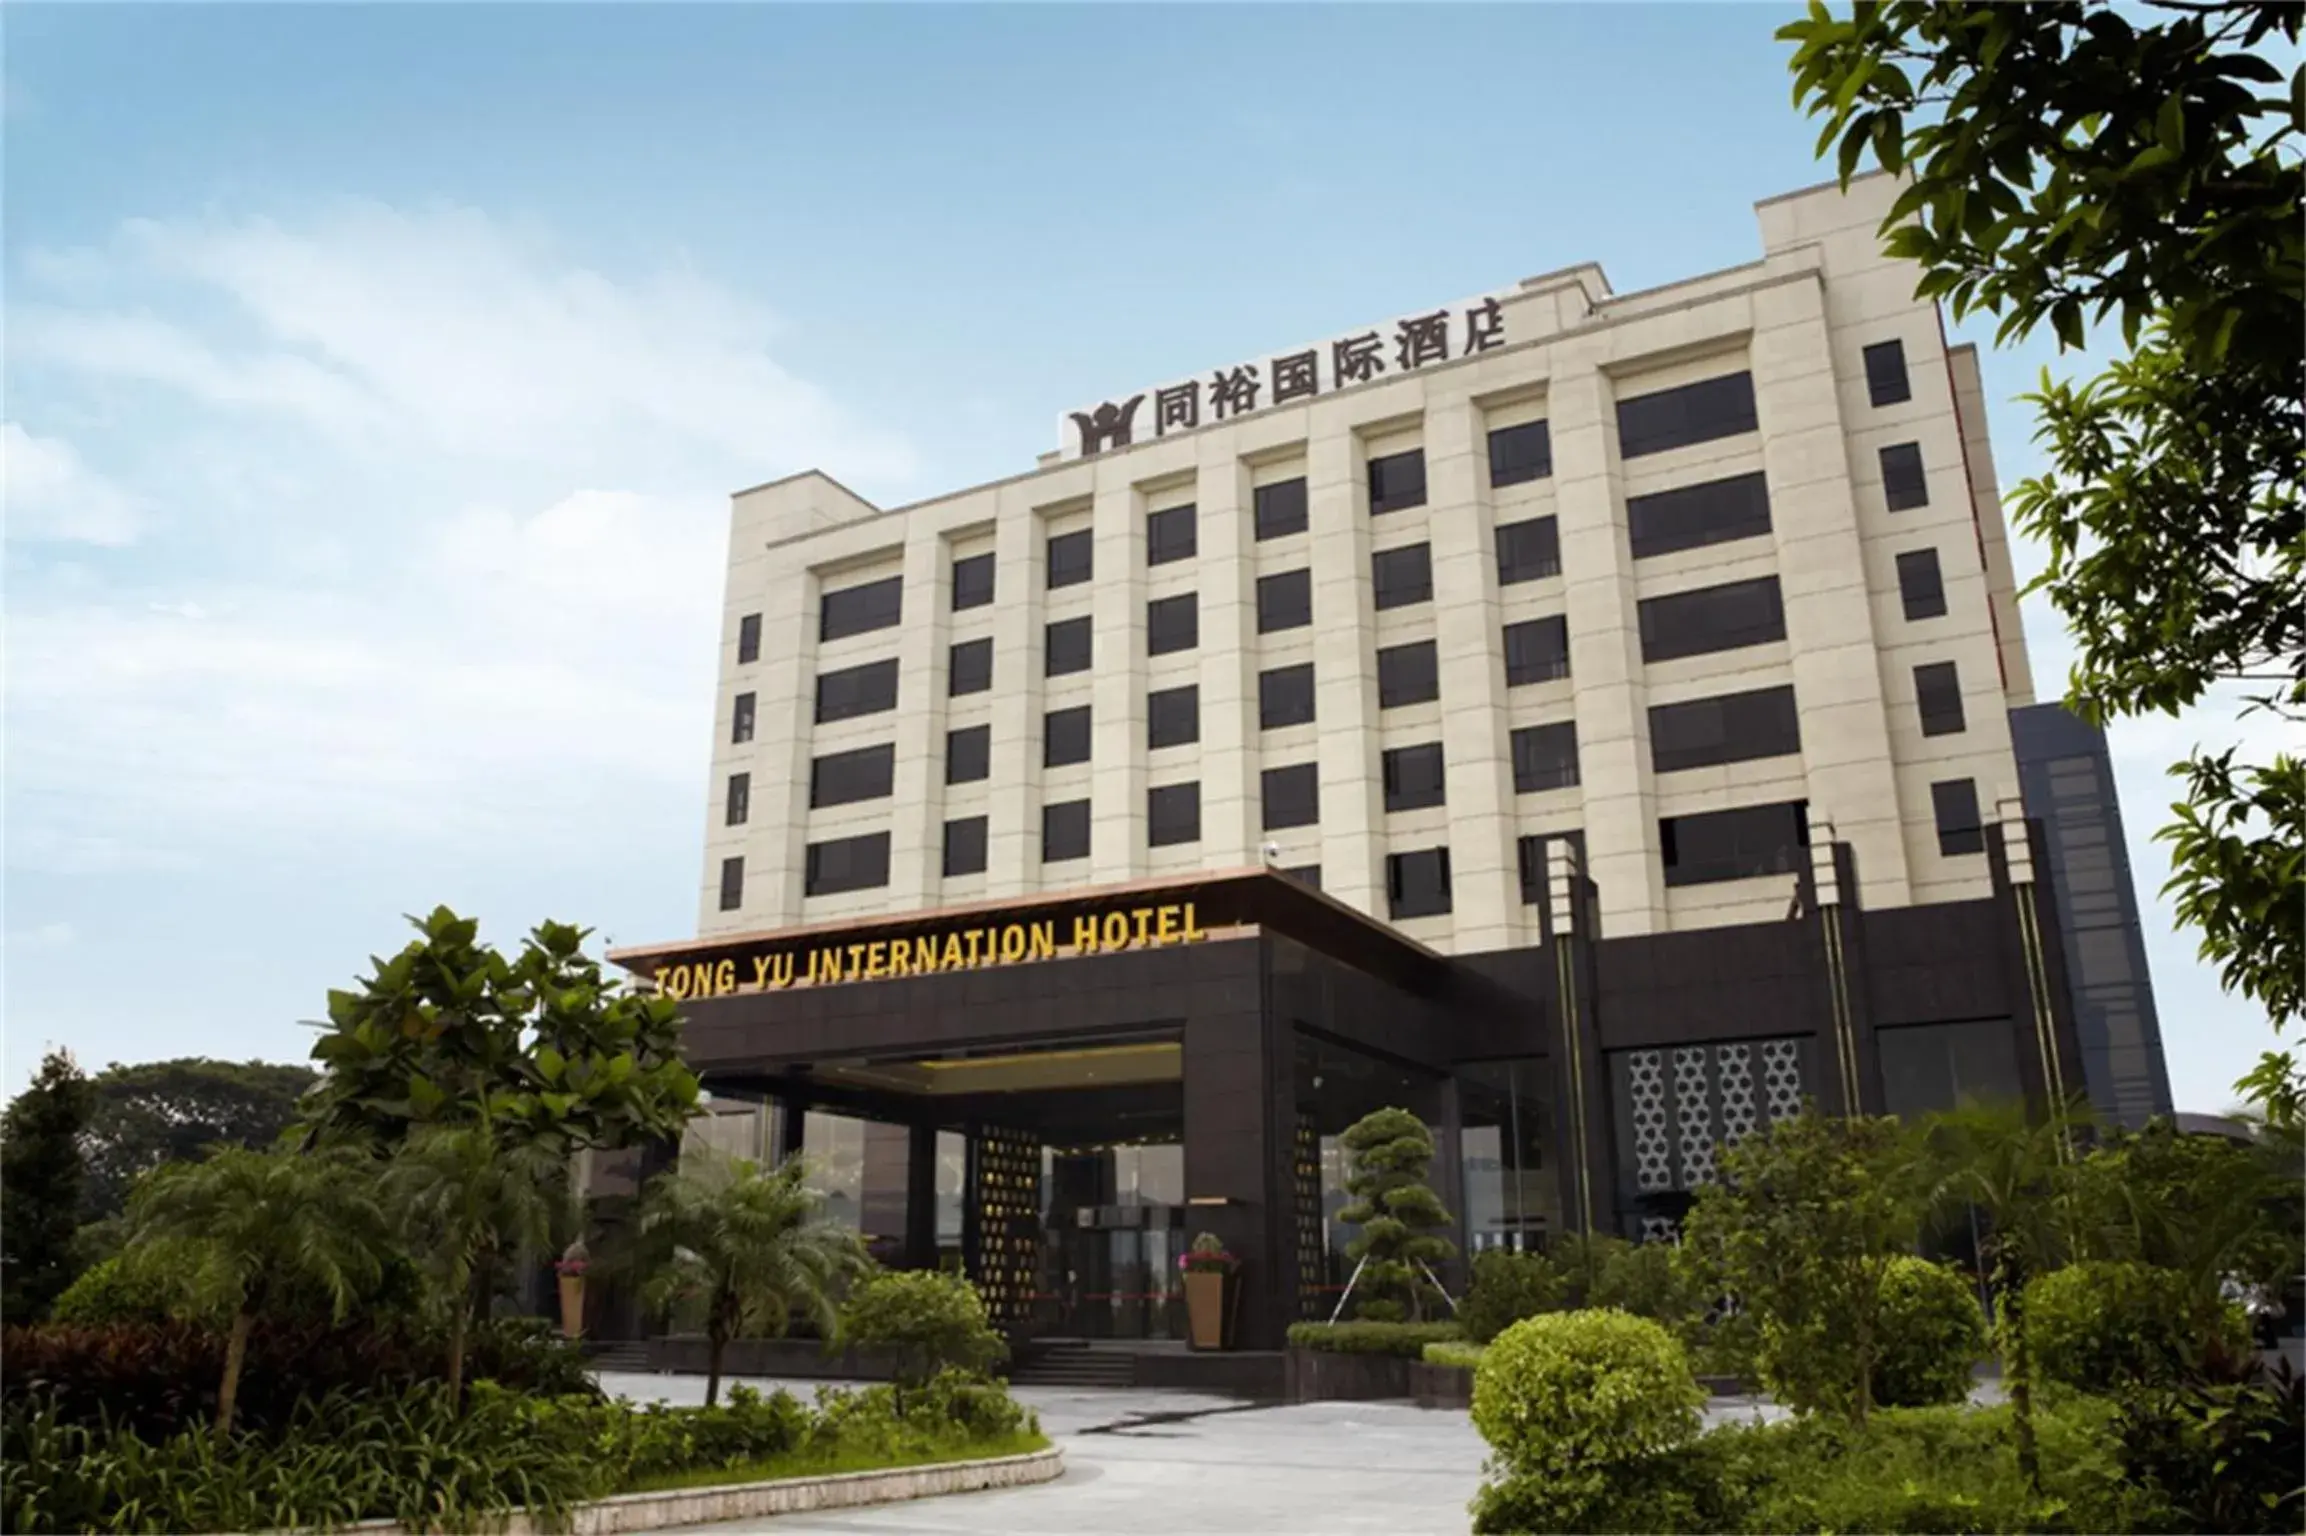 Property Building in Guangzhou Tong Yu International Hotel